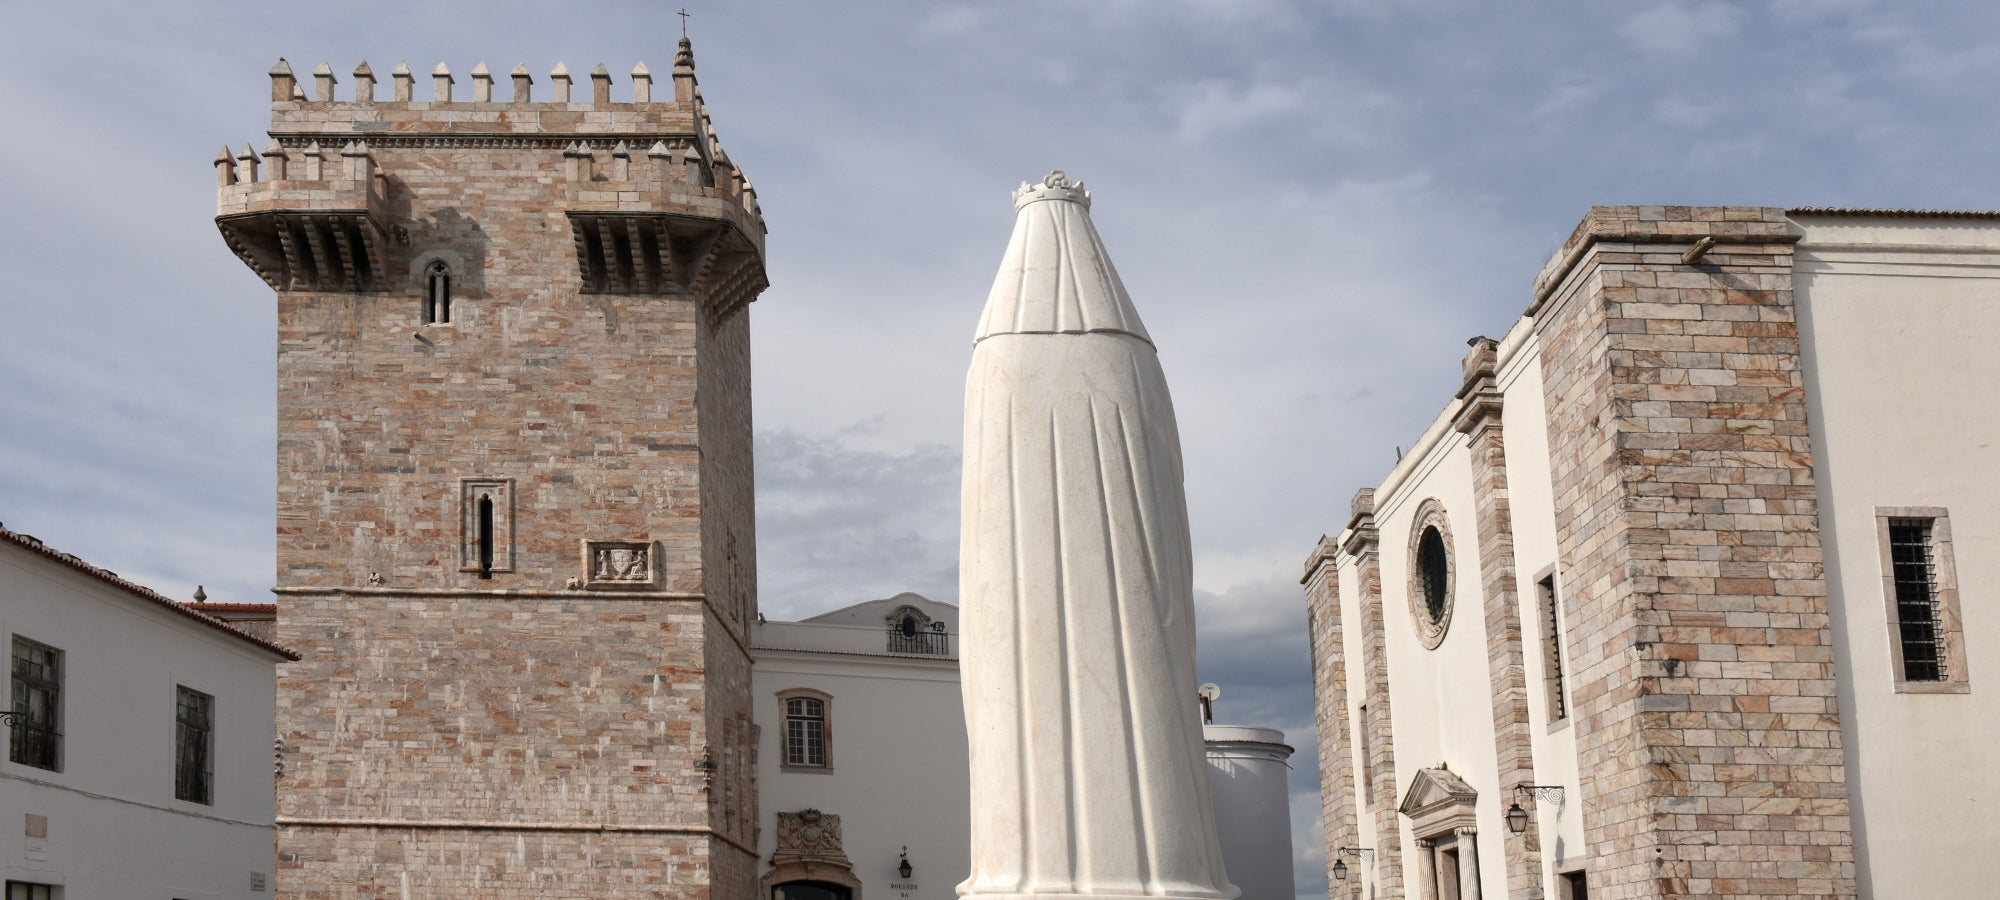 Historischer Platz mit Kirchen und Denkmal der Königin Isabella, Estremoz